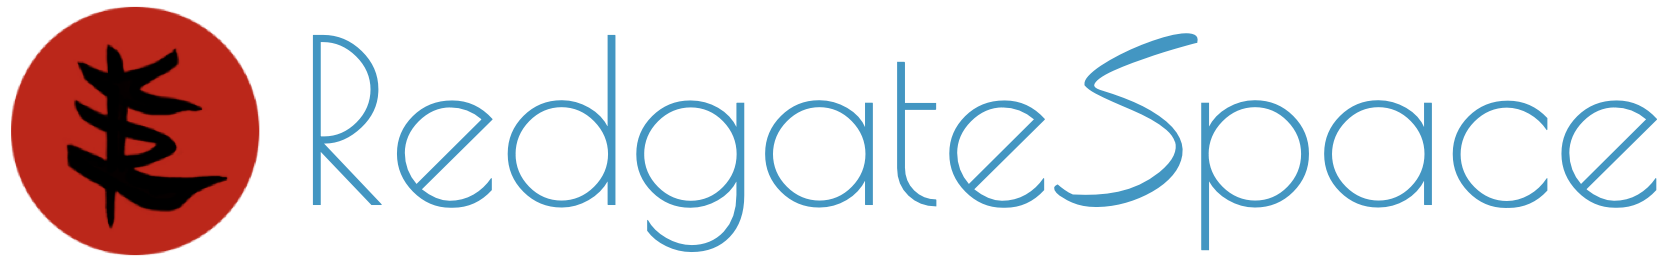 RedgateSpace Web Design logomark